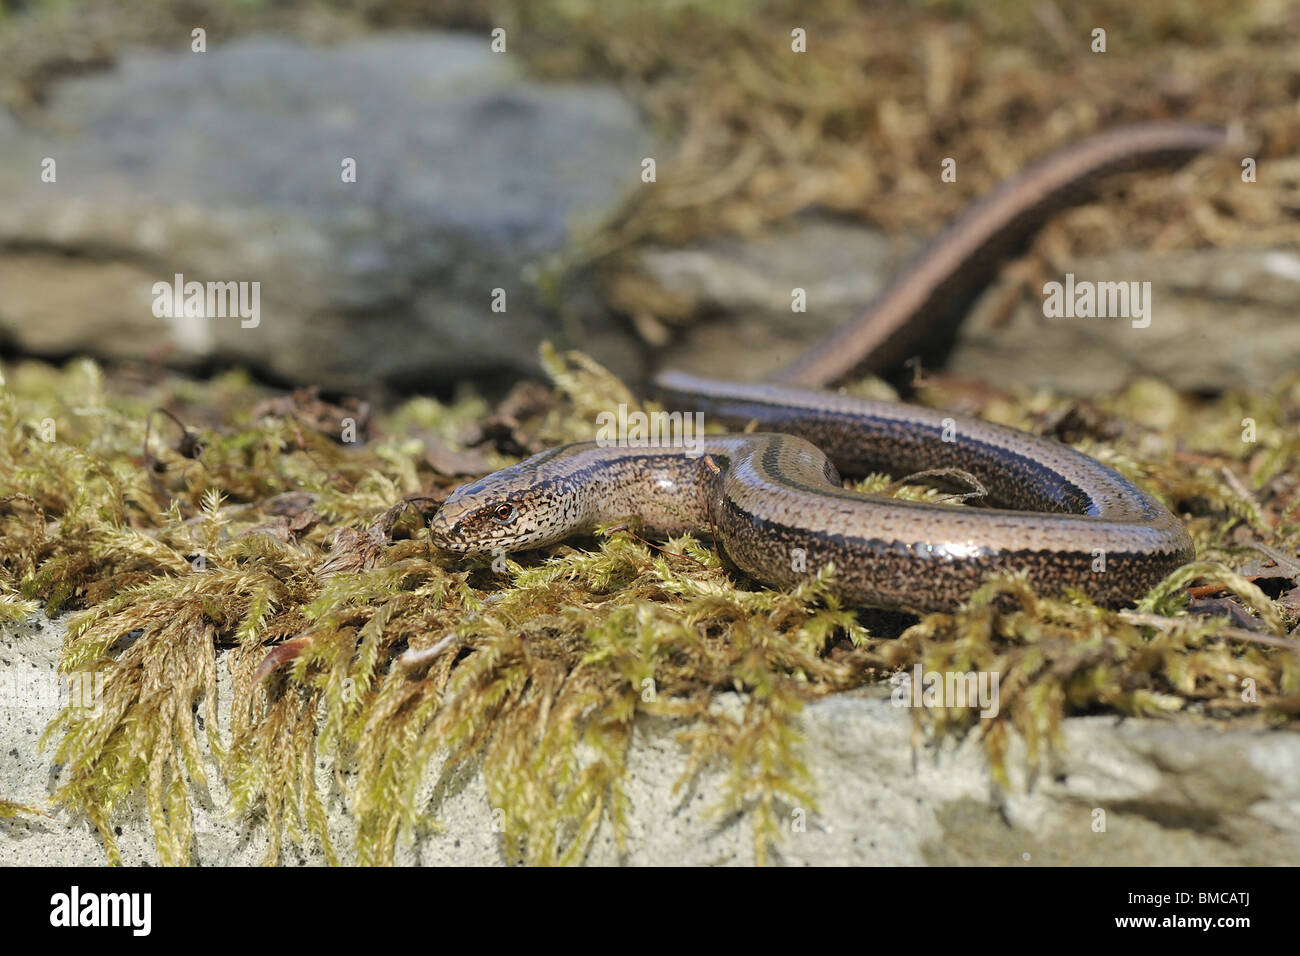 Female slow worm (Anguis fragilis) crawling on mossy stone Stock Photo